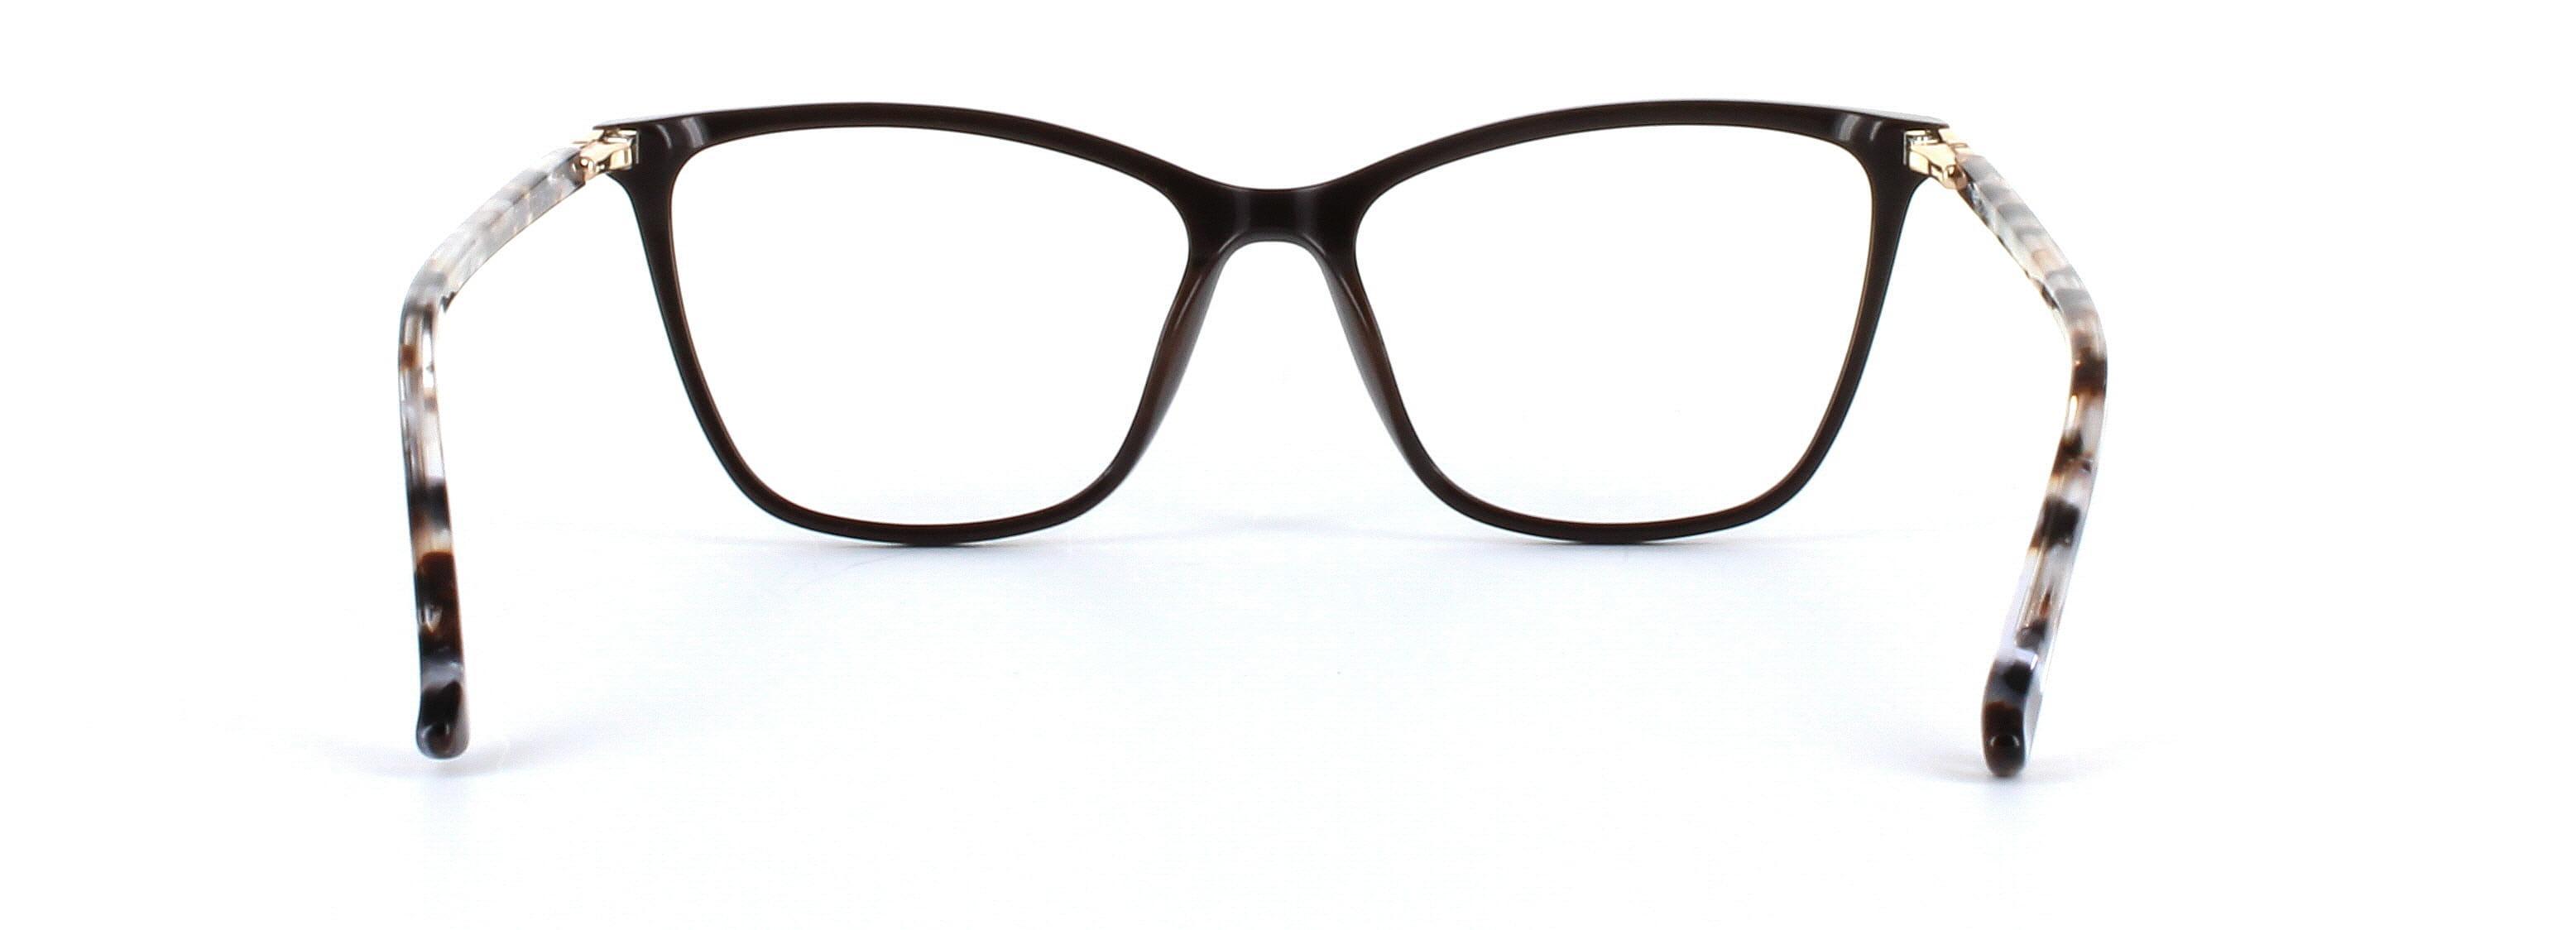 Gloria Brown Full Rim Cat Eye Acetate Glasses - Image View 3